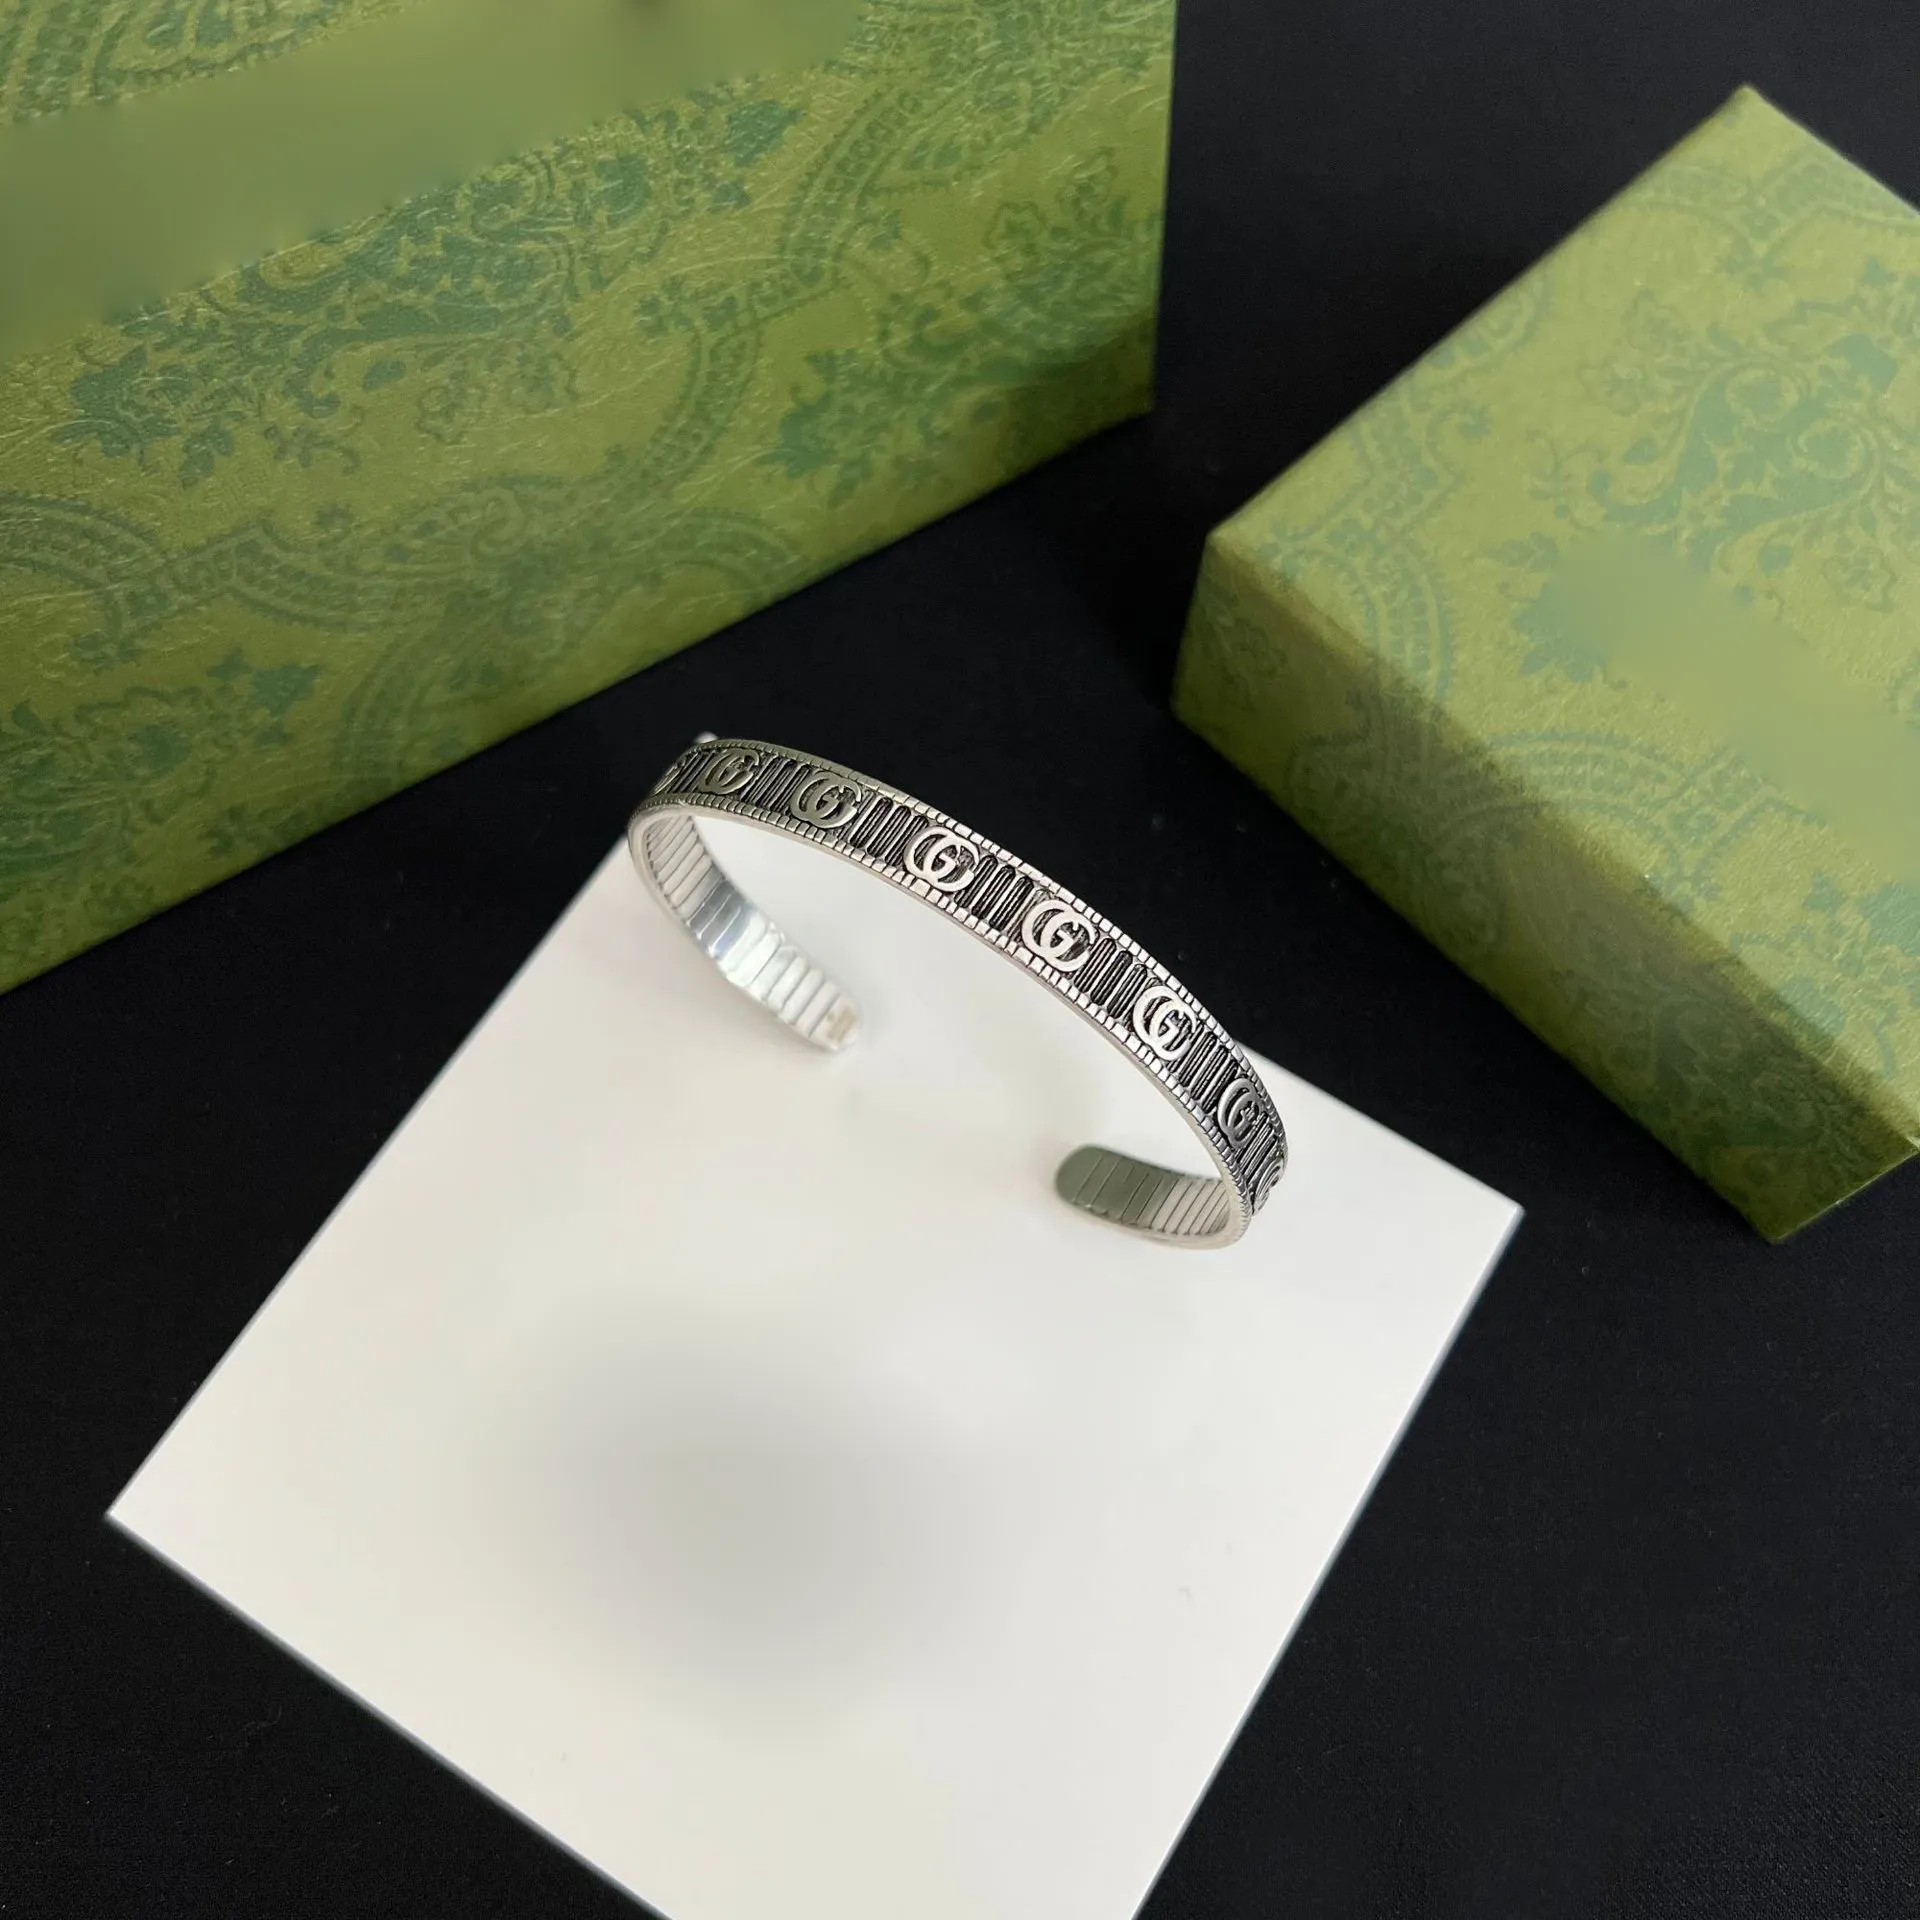 Alta qualidade designer de bronze aberto pulseiras corrente cristal marca luxo carta flor cobre pulseira das mulheres dos homens pulseira l231u